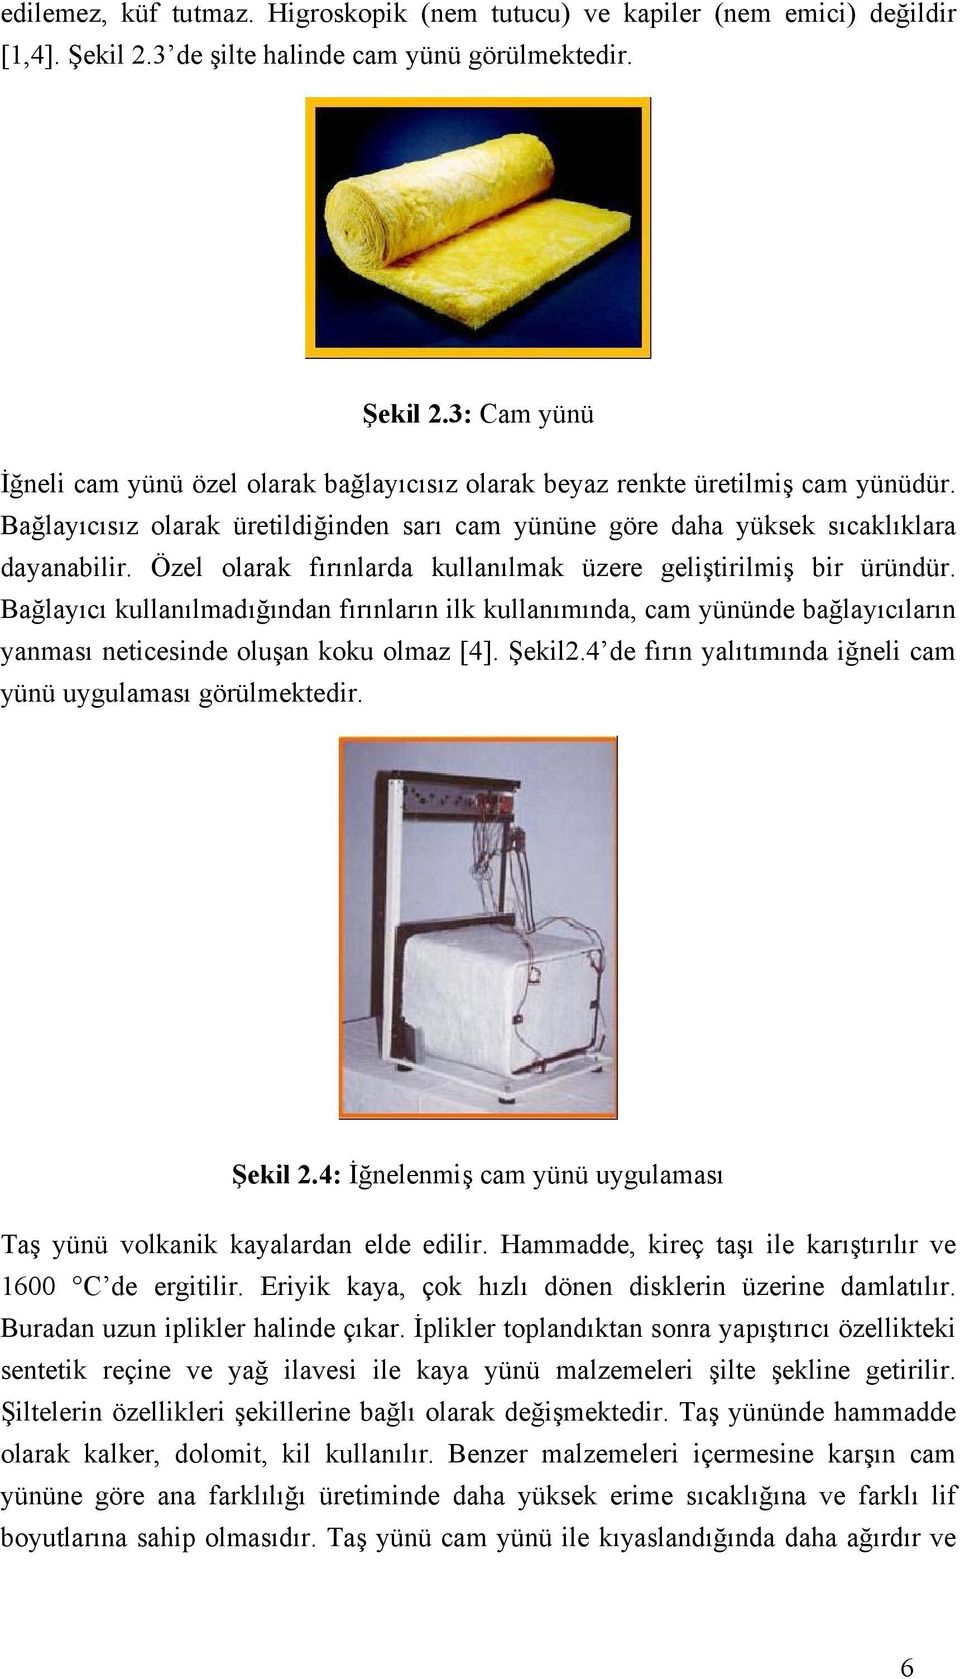 Bağlayıcı kullanılmadığından fırınların ilk kullanımında, cam yününde bağlayıcıların yanması neticesinde oluşan koku olmaz [4]. Şekil2.4 de fırın yalıtımında iğneli cam yünü uygulaması görülmektedir.